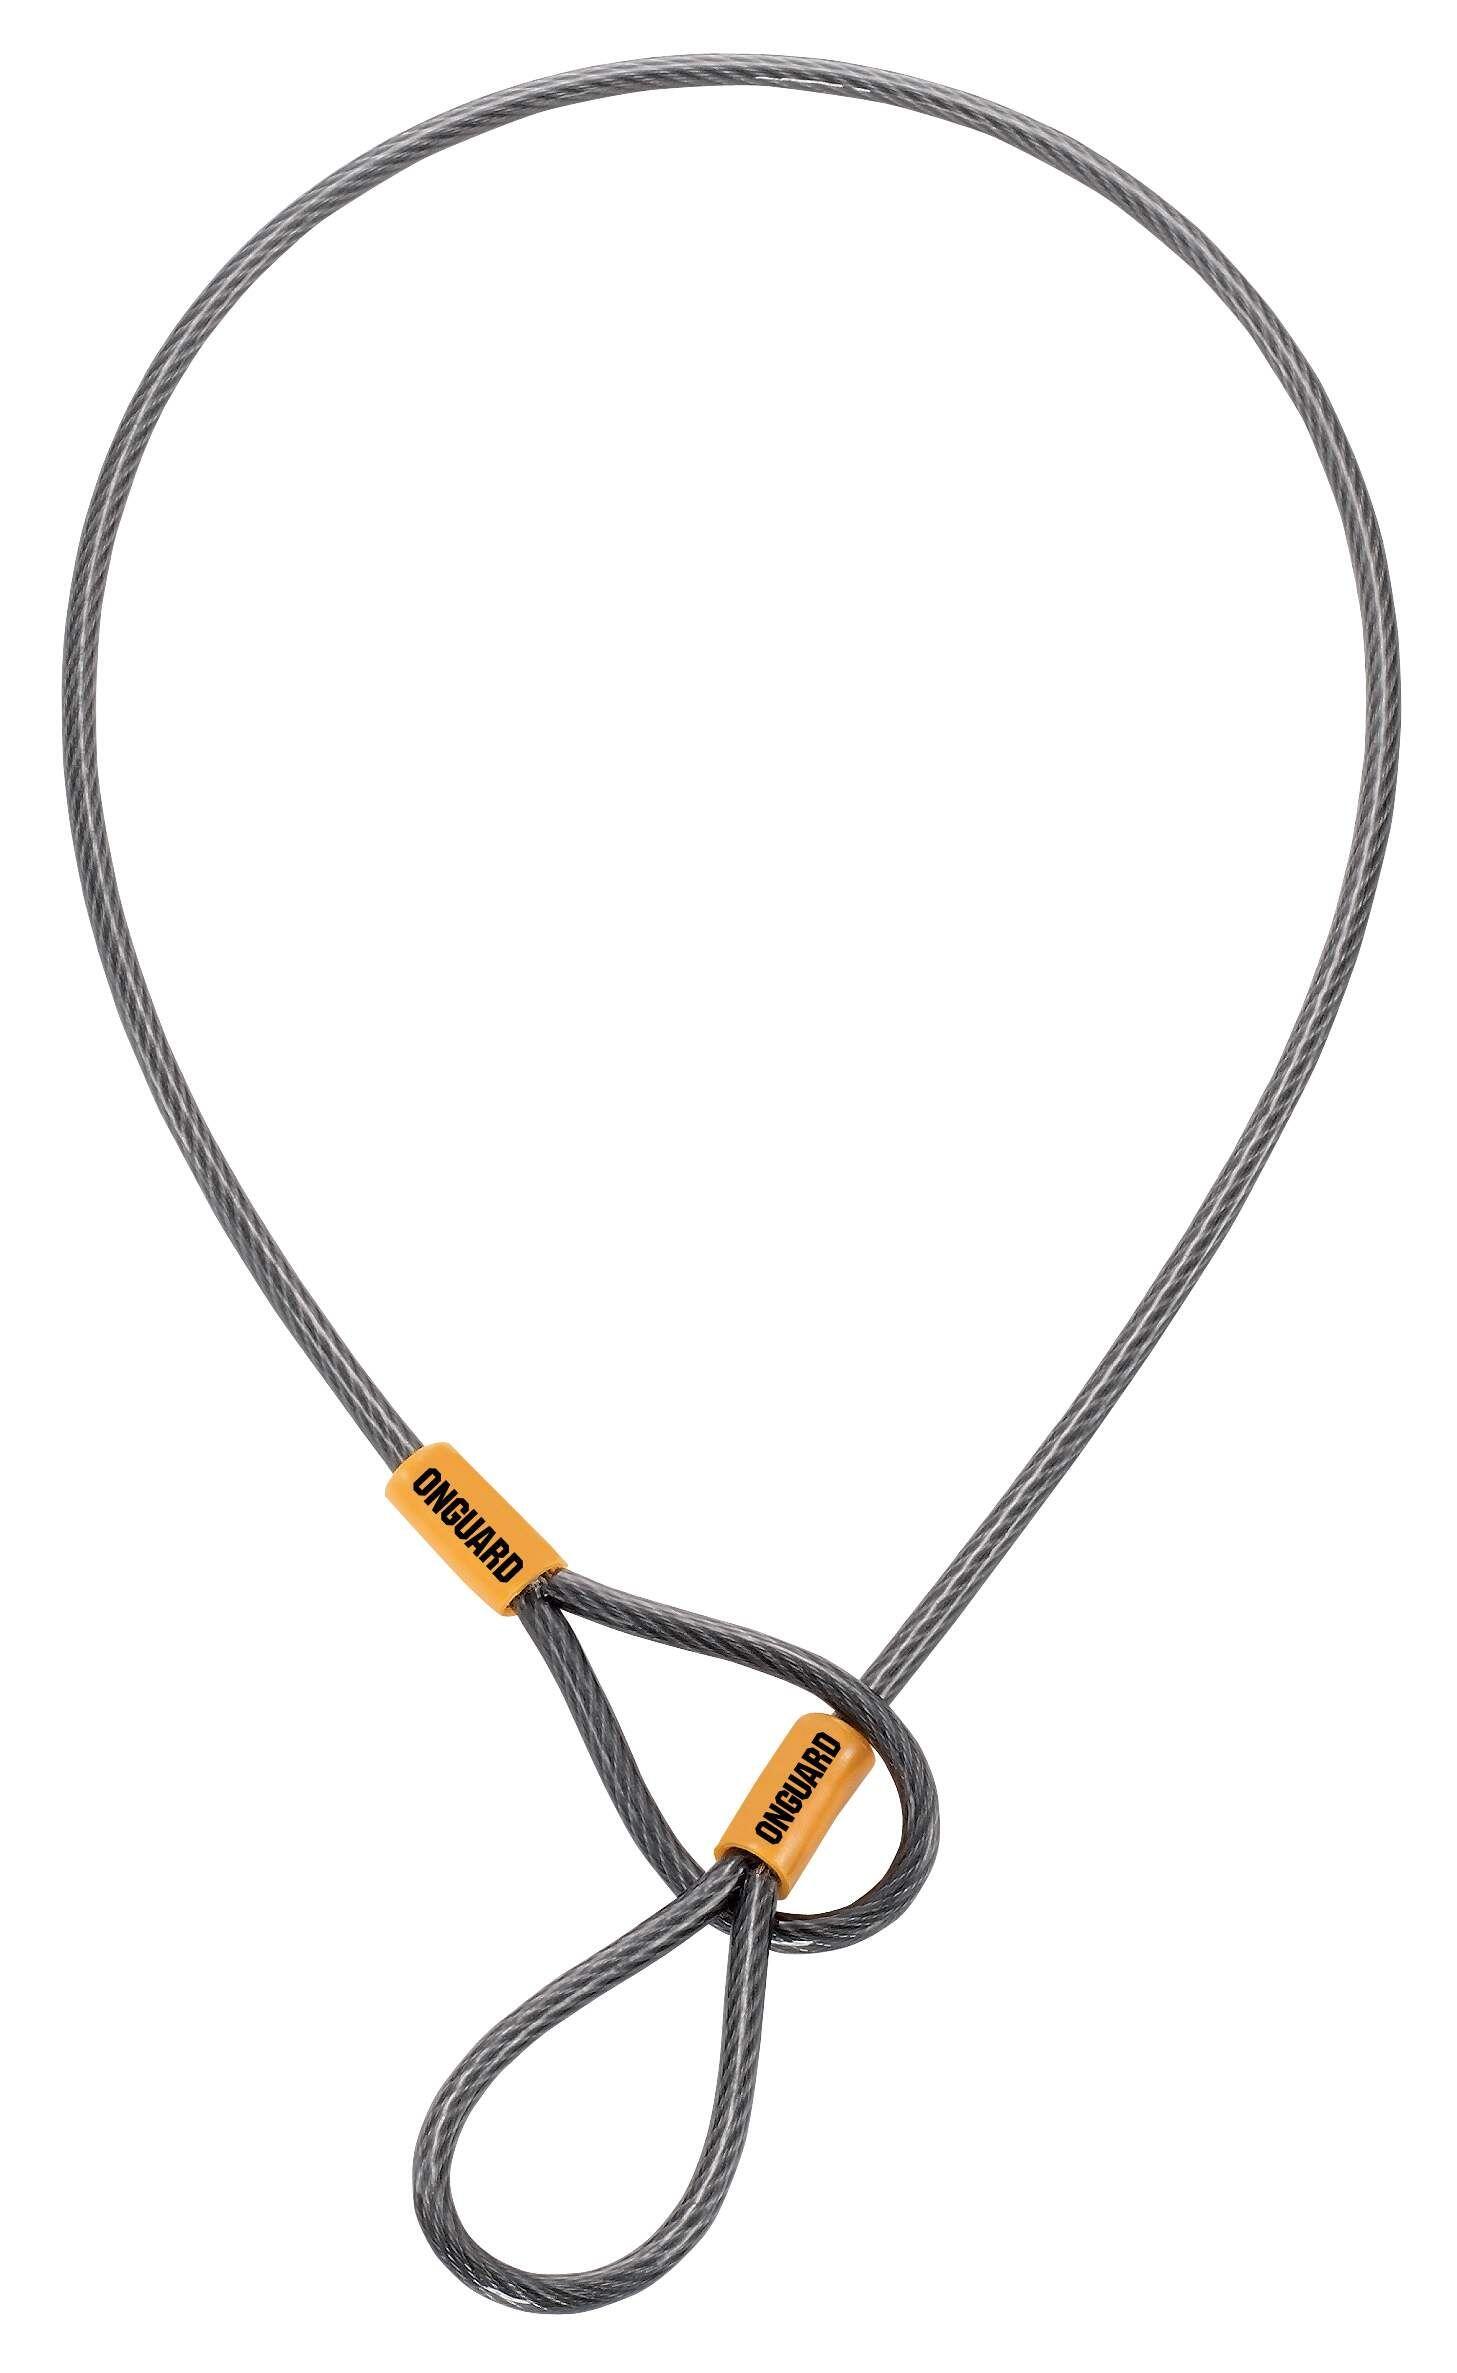 ONGUARD OnGuard Akita Accessory Cable  53cm x 5mm